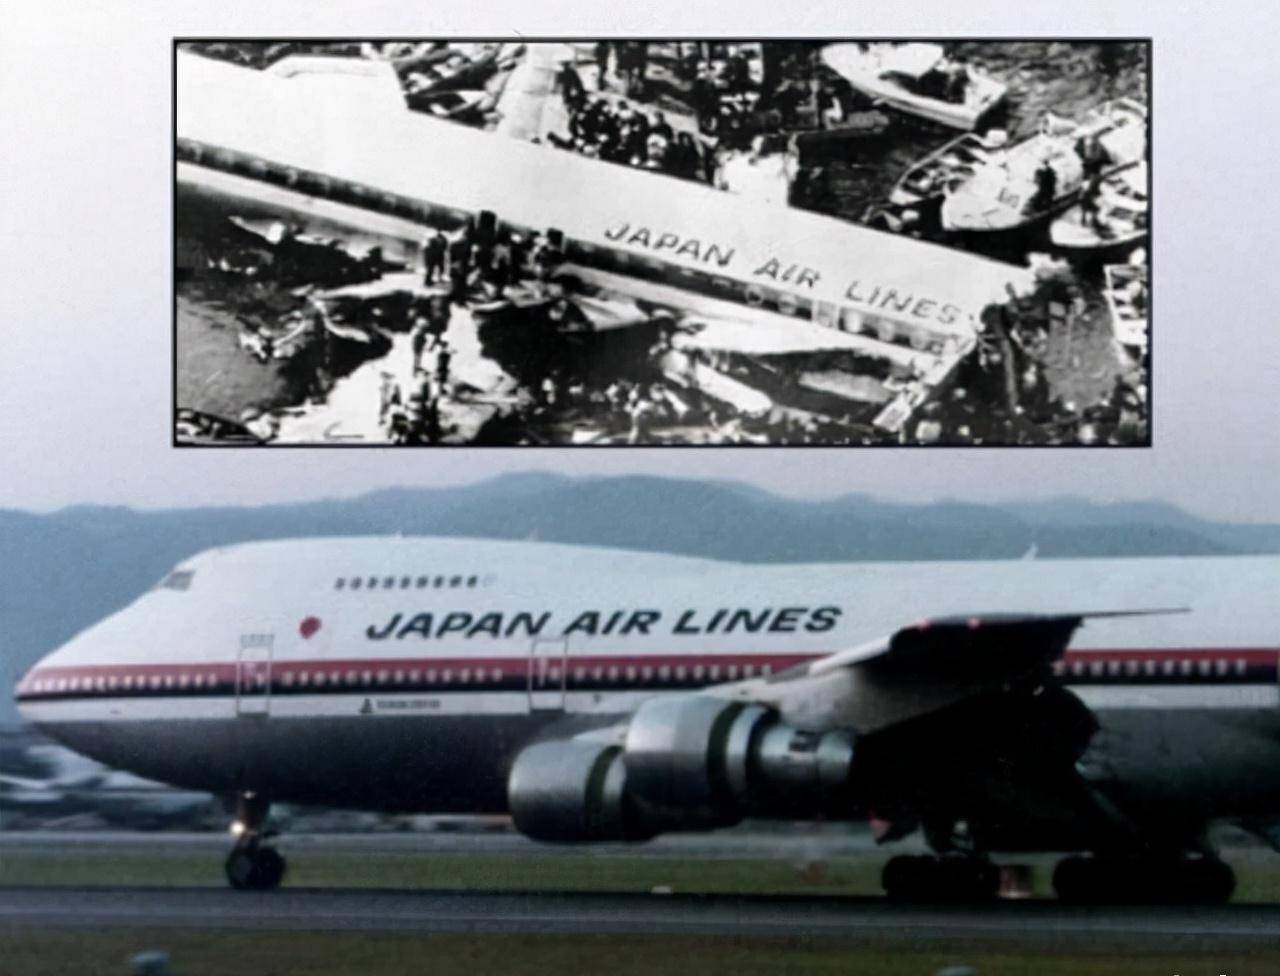 波音747-8空难图片